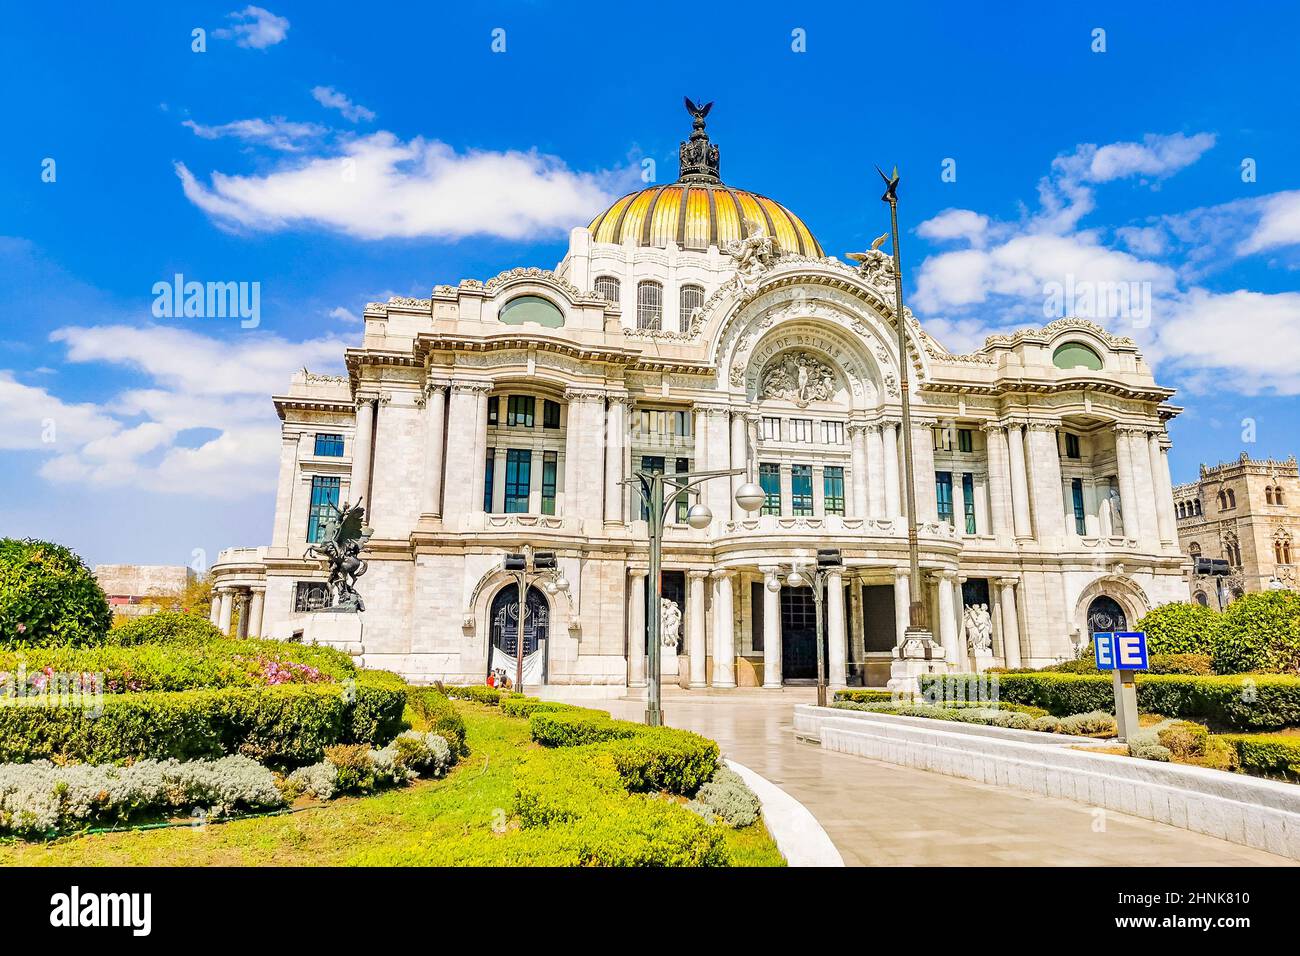 Impresionante palacio de obras maestras arquitectónicas de bellas artes en Ciudad de México. Foto de stock